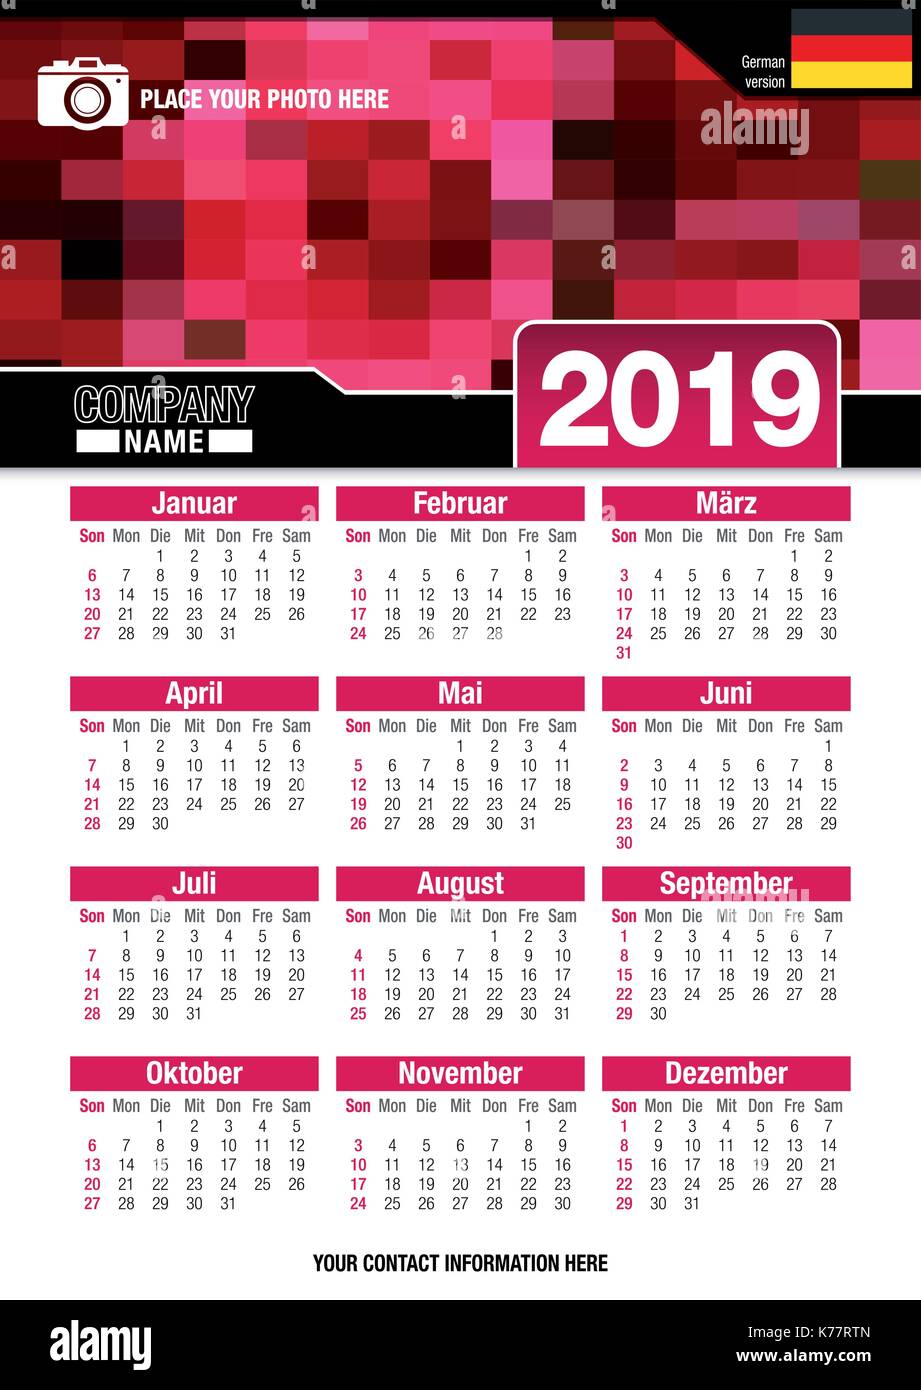 Utile calendario da parete 2019 con design di colori rosso mosaico. Formato A4 verticale. Dimensioni: 210mm x 297mm. Versione in tedesco - immagine vettoriale Illustrazione Vettoriale